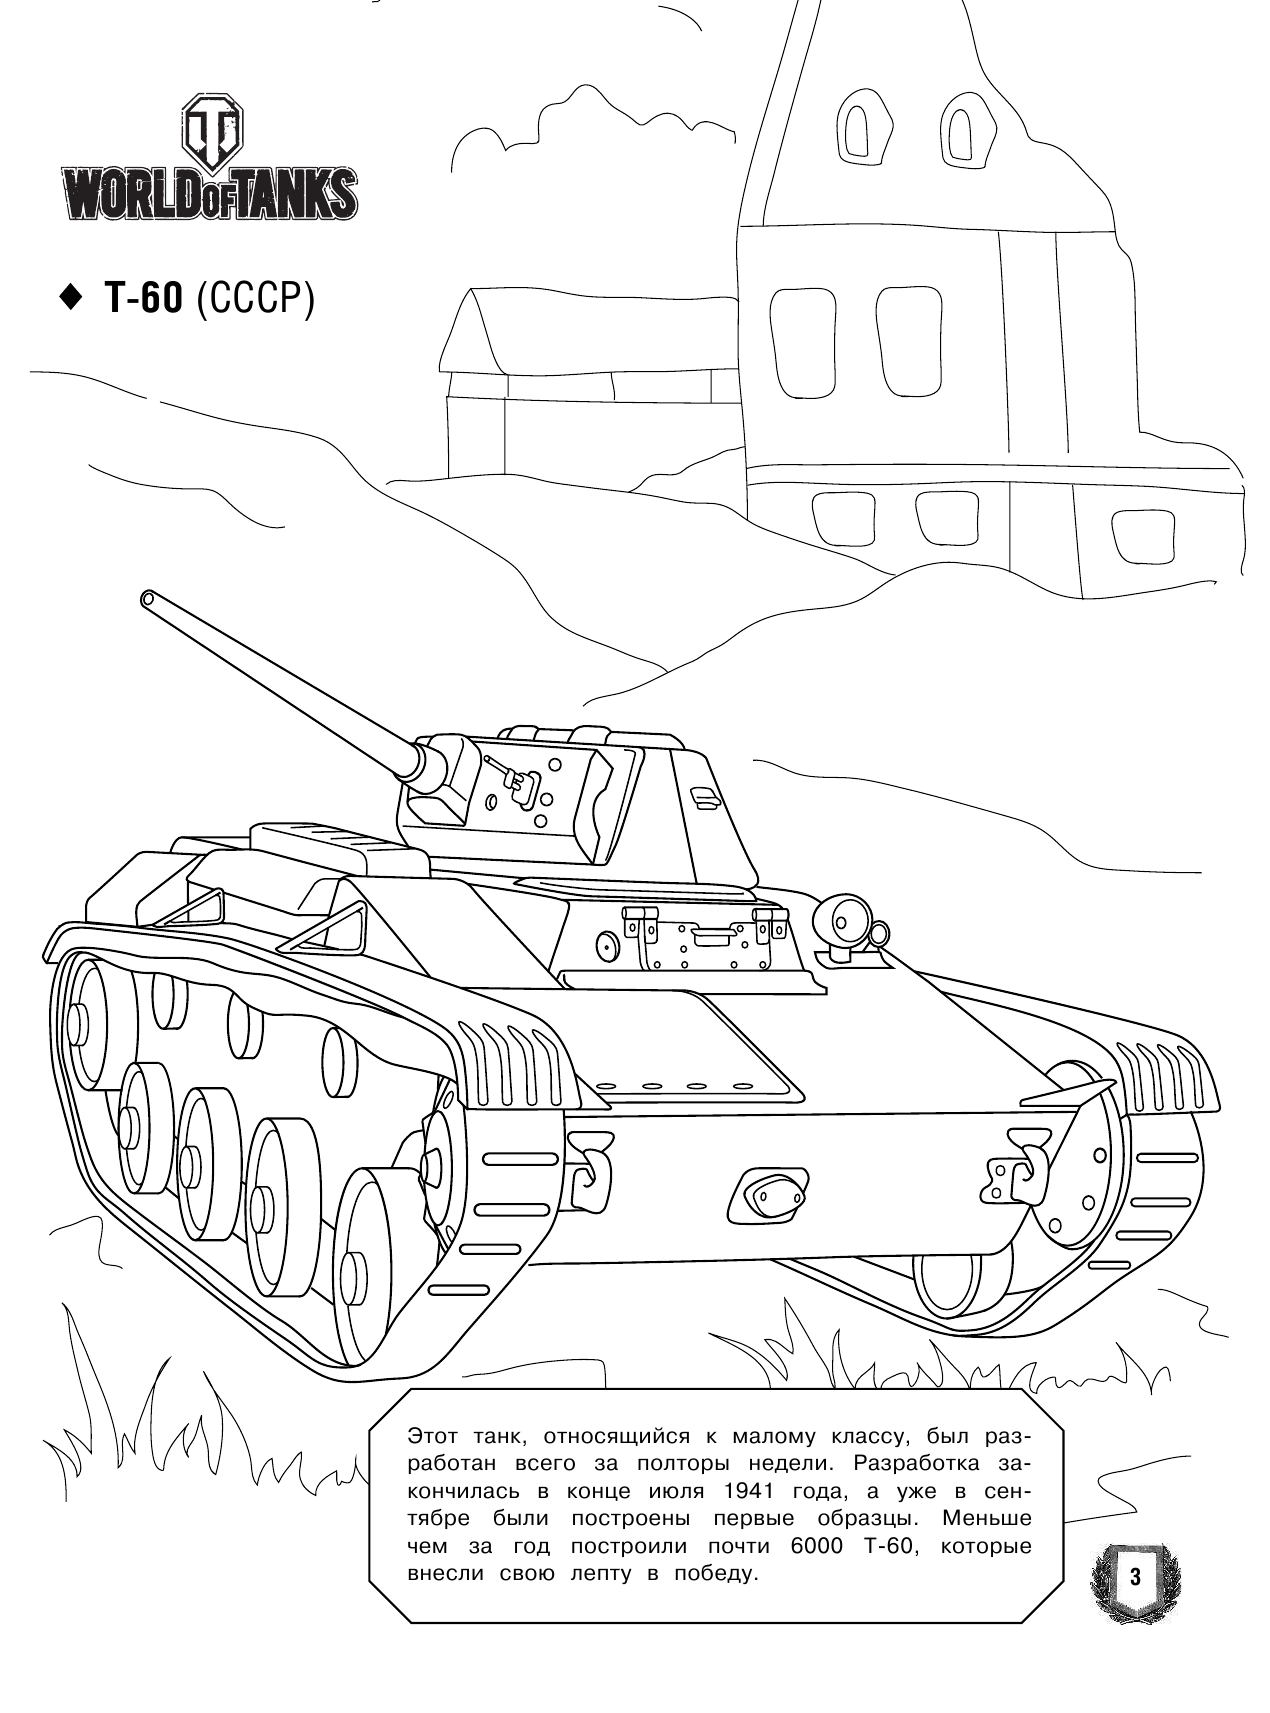  Большая раскраска. Советская военная техника - страница 4